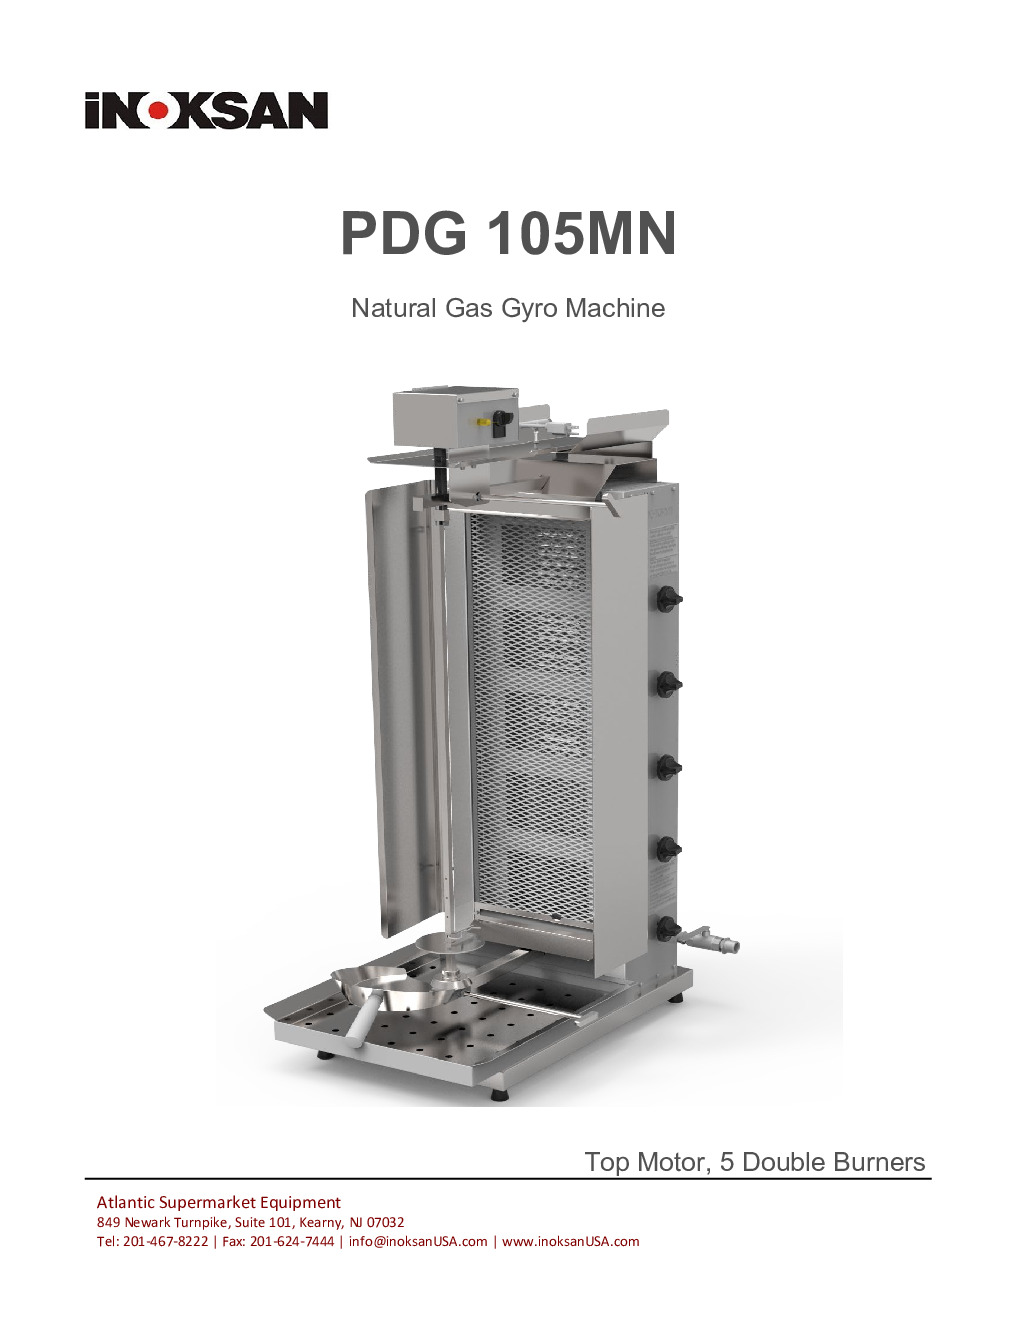 Inoksan PDG105MN Gas Vertical Broiler (Gyro)